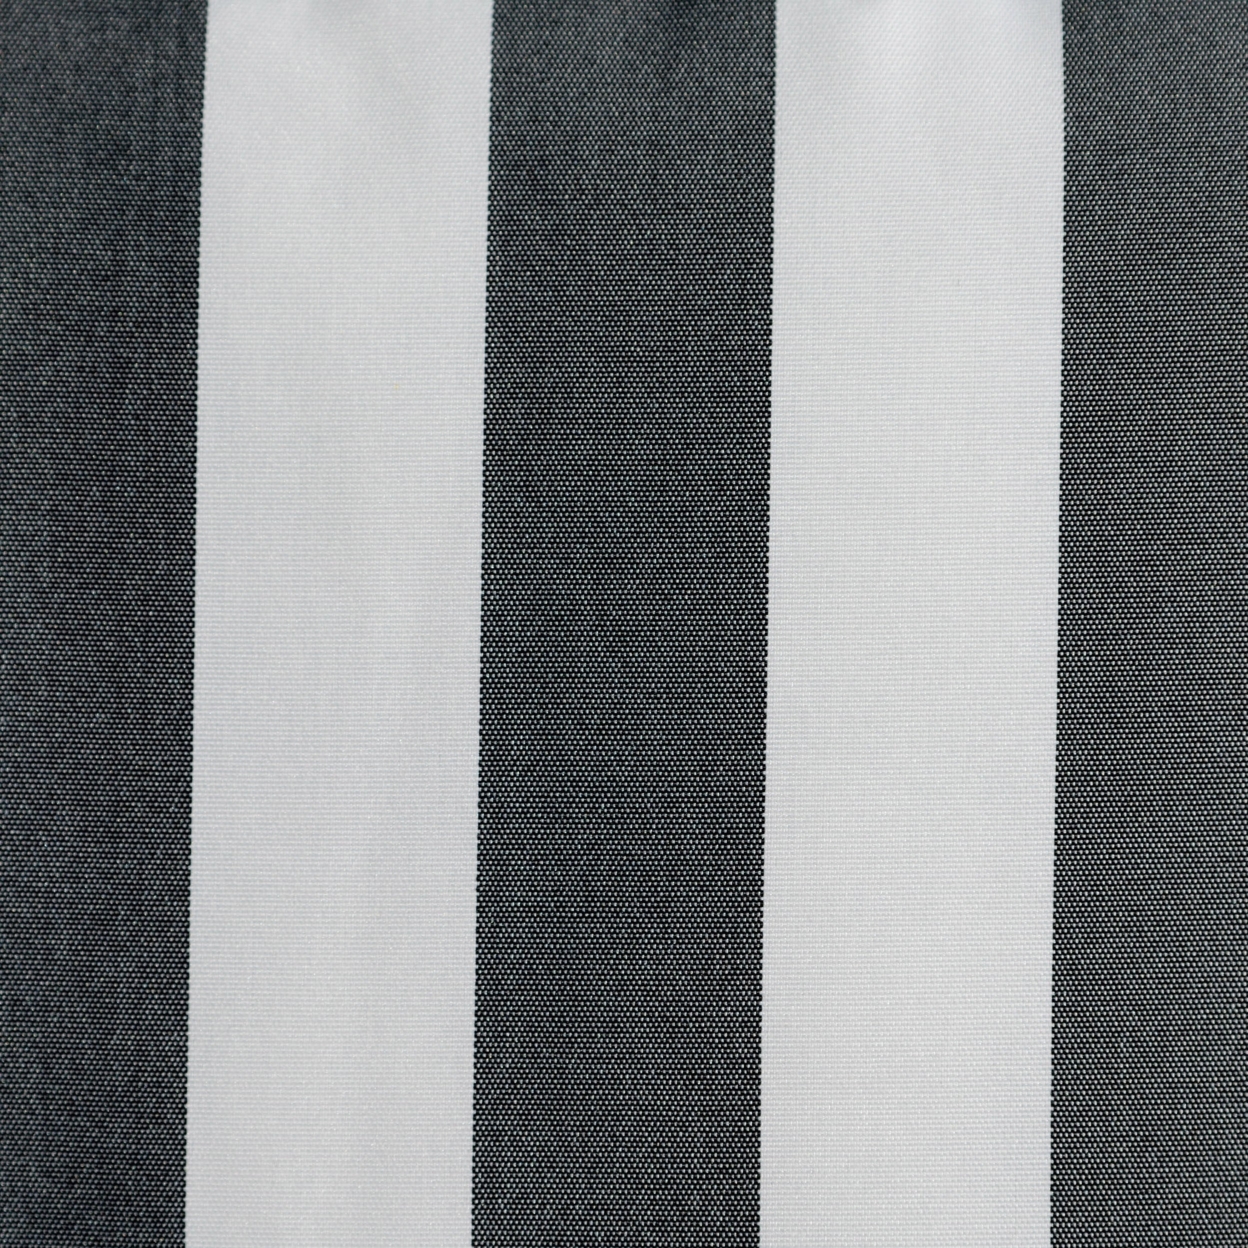 Coronado Outdoor Stripe Water Resistant Rectangular Throw Pillow - Blue/white, Single